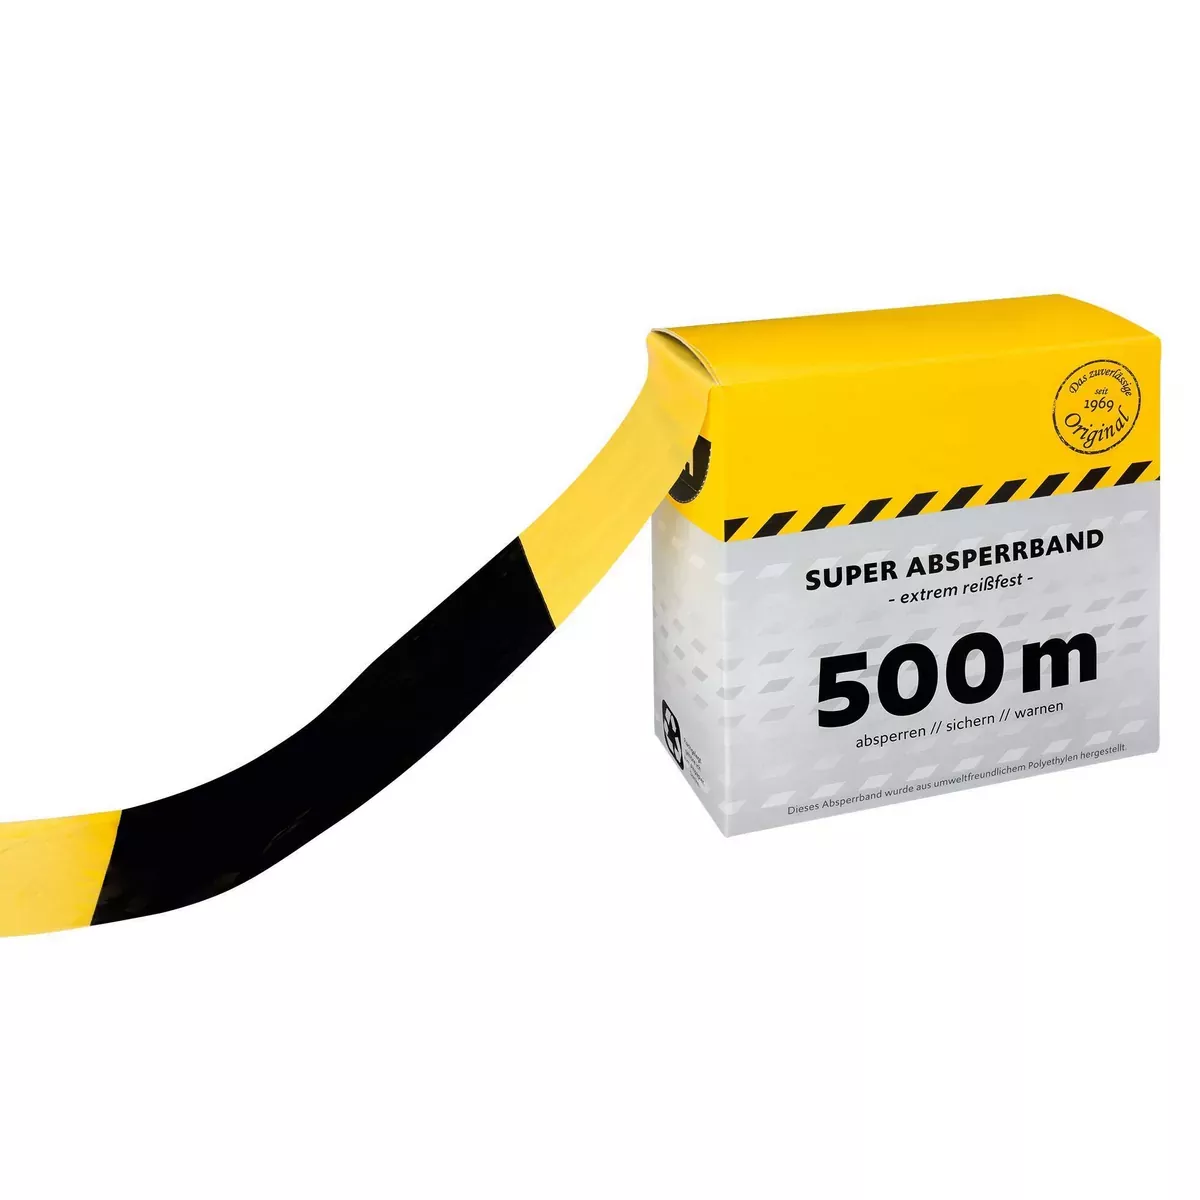 Absperrband aus Polyethylenfolie, beidseitig schwarz-gelb geblockt, im Abrollkarton, 500 m